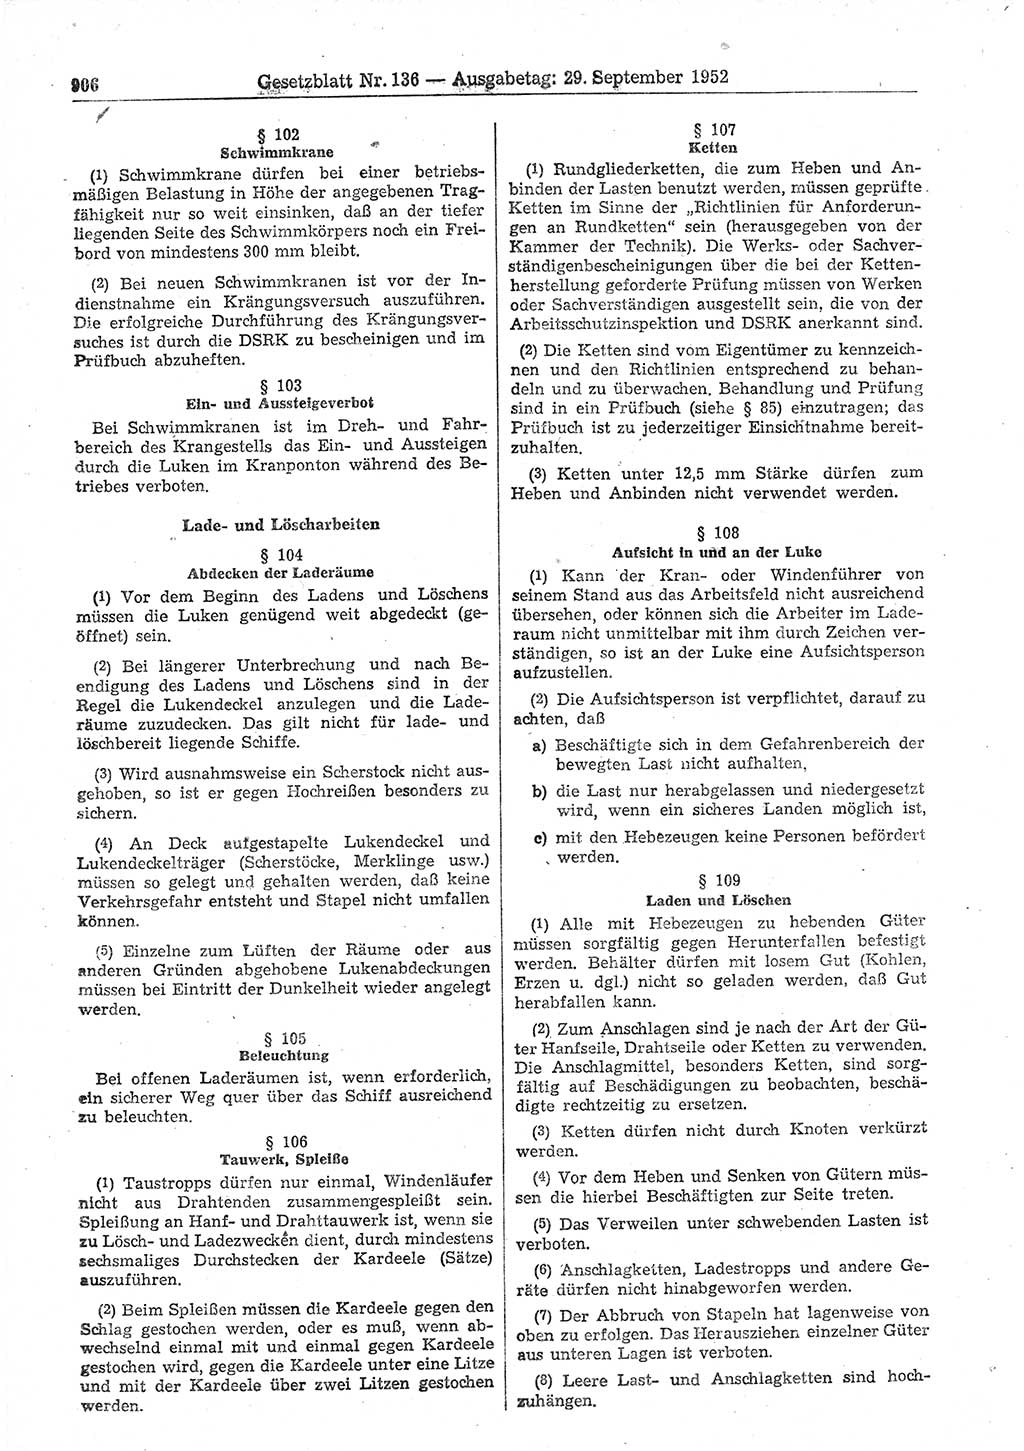 Gesetzblatt (GBl.) der Deutschen Demokratischen Republik (DDR) 1952, Seite 906 (GBl. DDR 1952, S. 906)